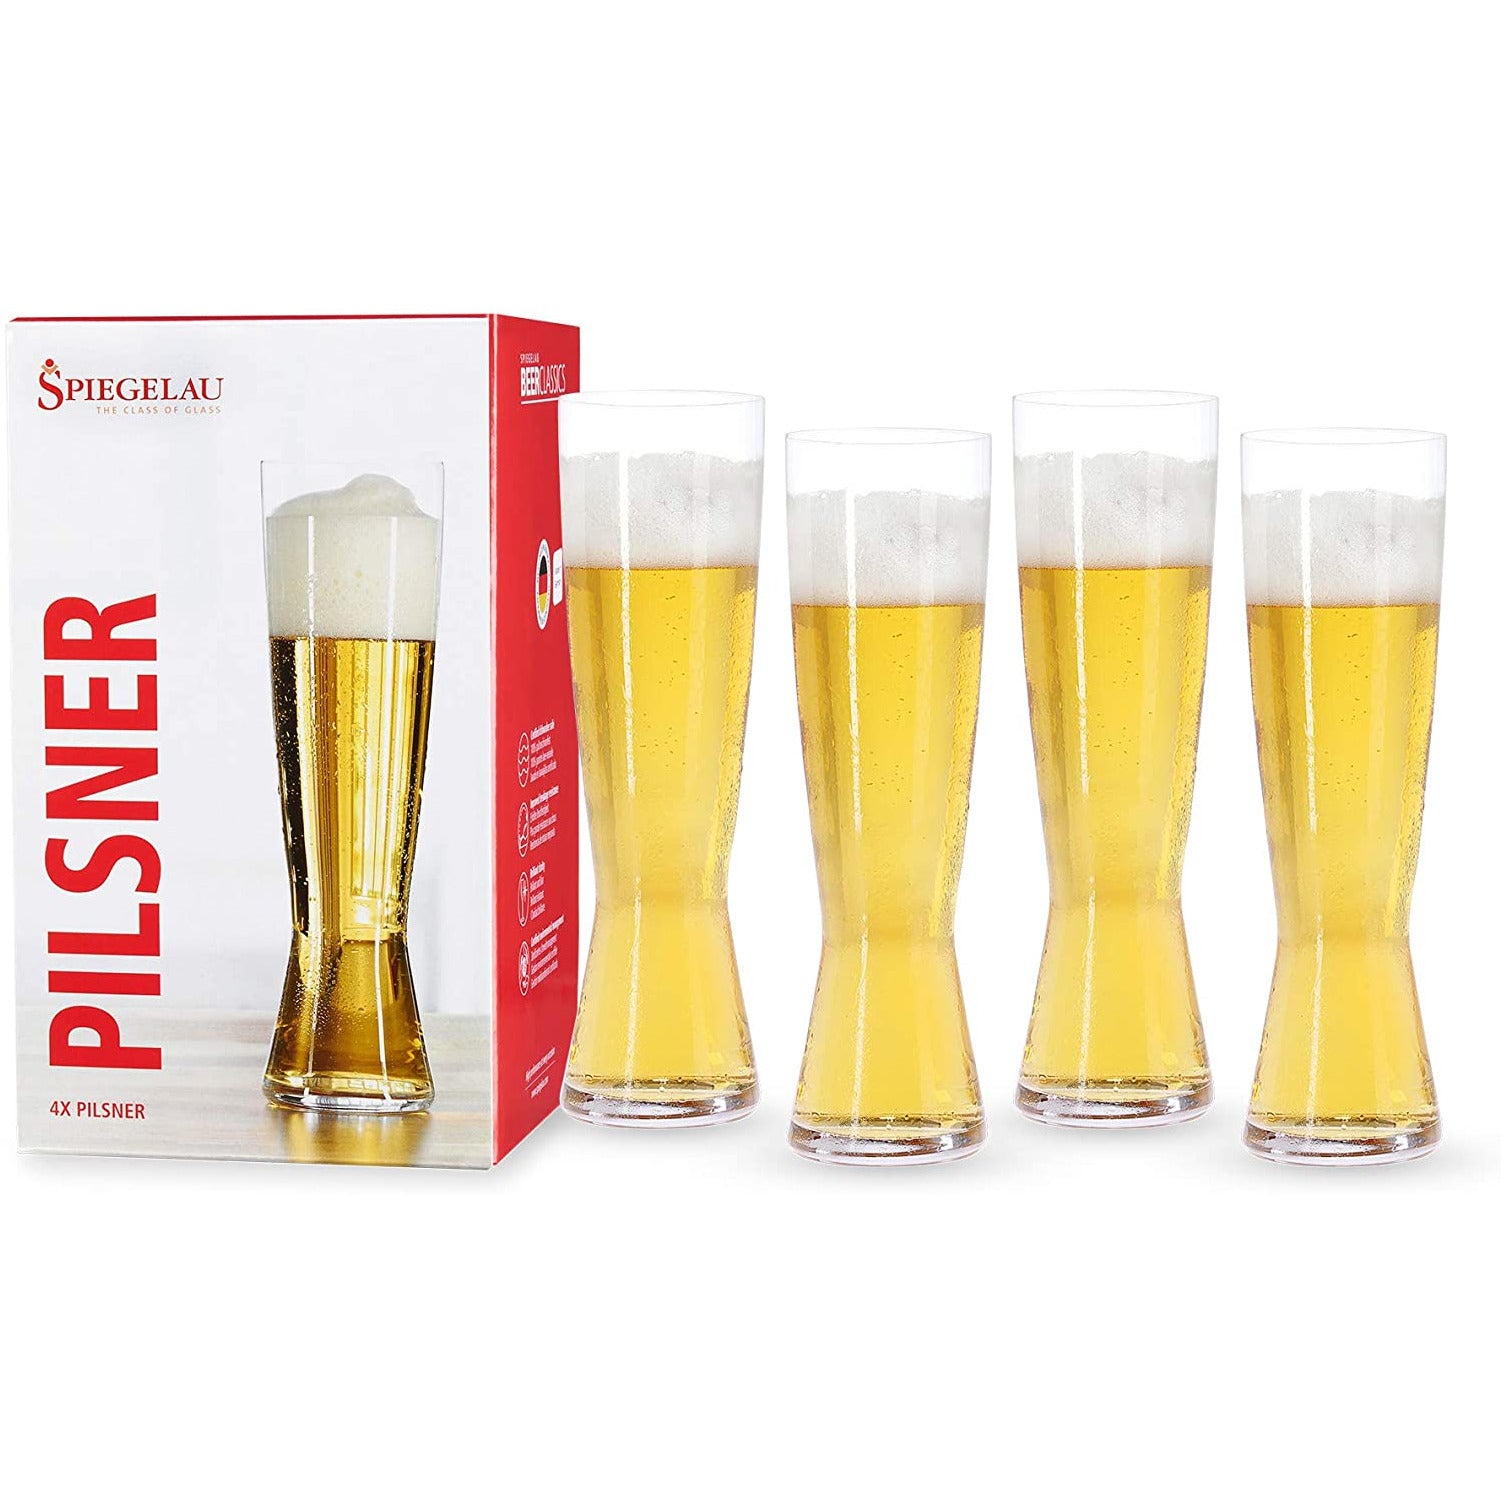 Klassiske lange og elegante ølglass fra Spiegelau